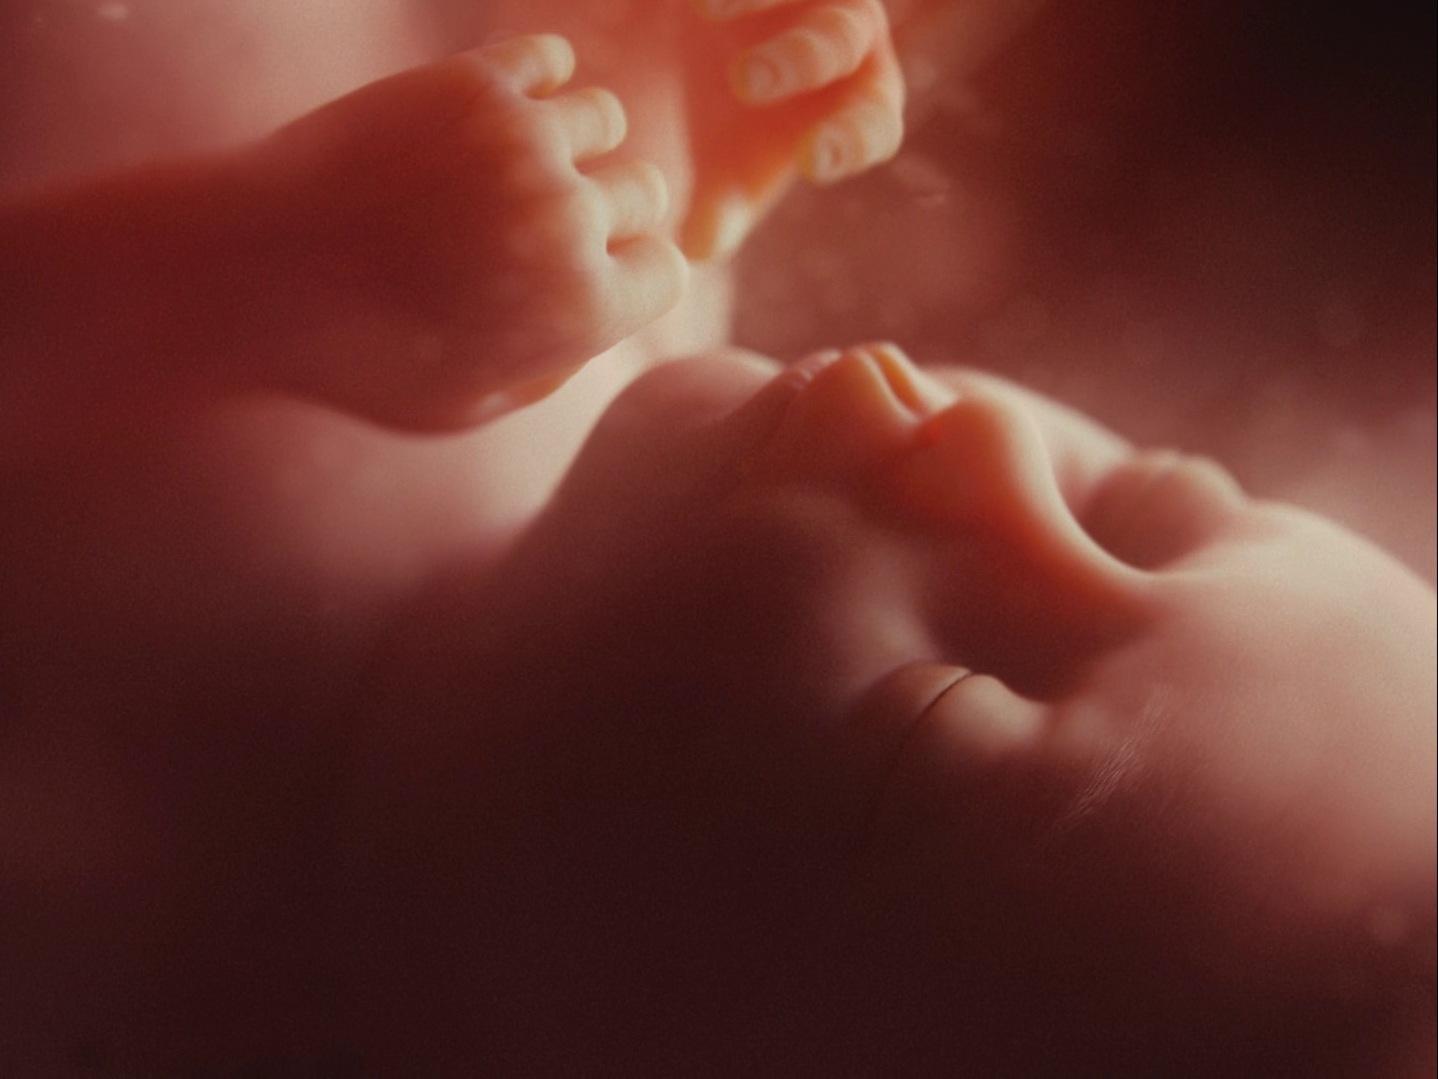 Cena do filme Blonde. Representação virtual de um feto dentro da barriga. Tronco, mãos e rosto do feto no plano.